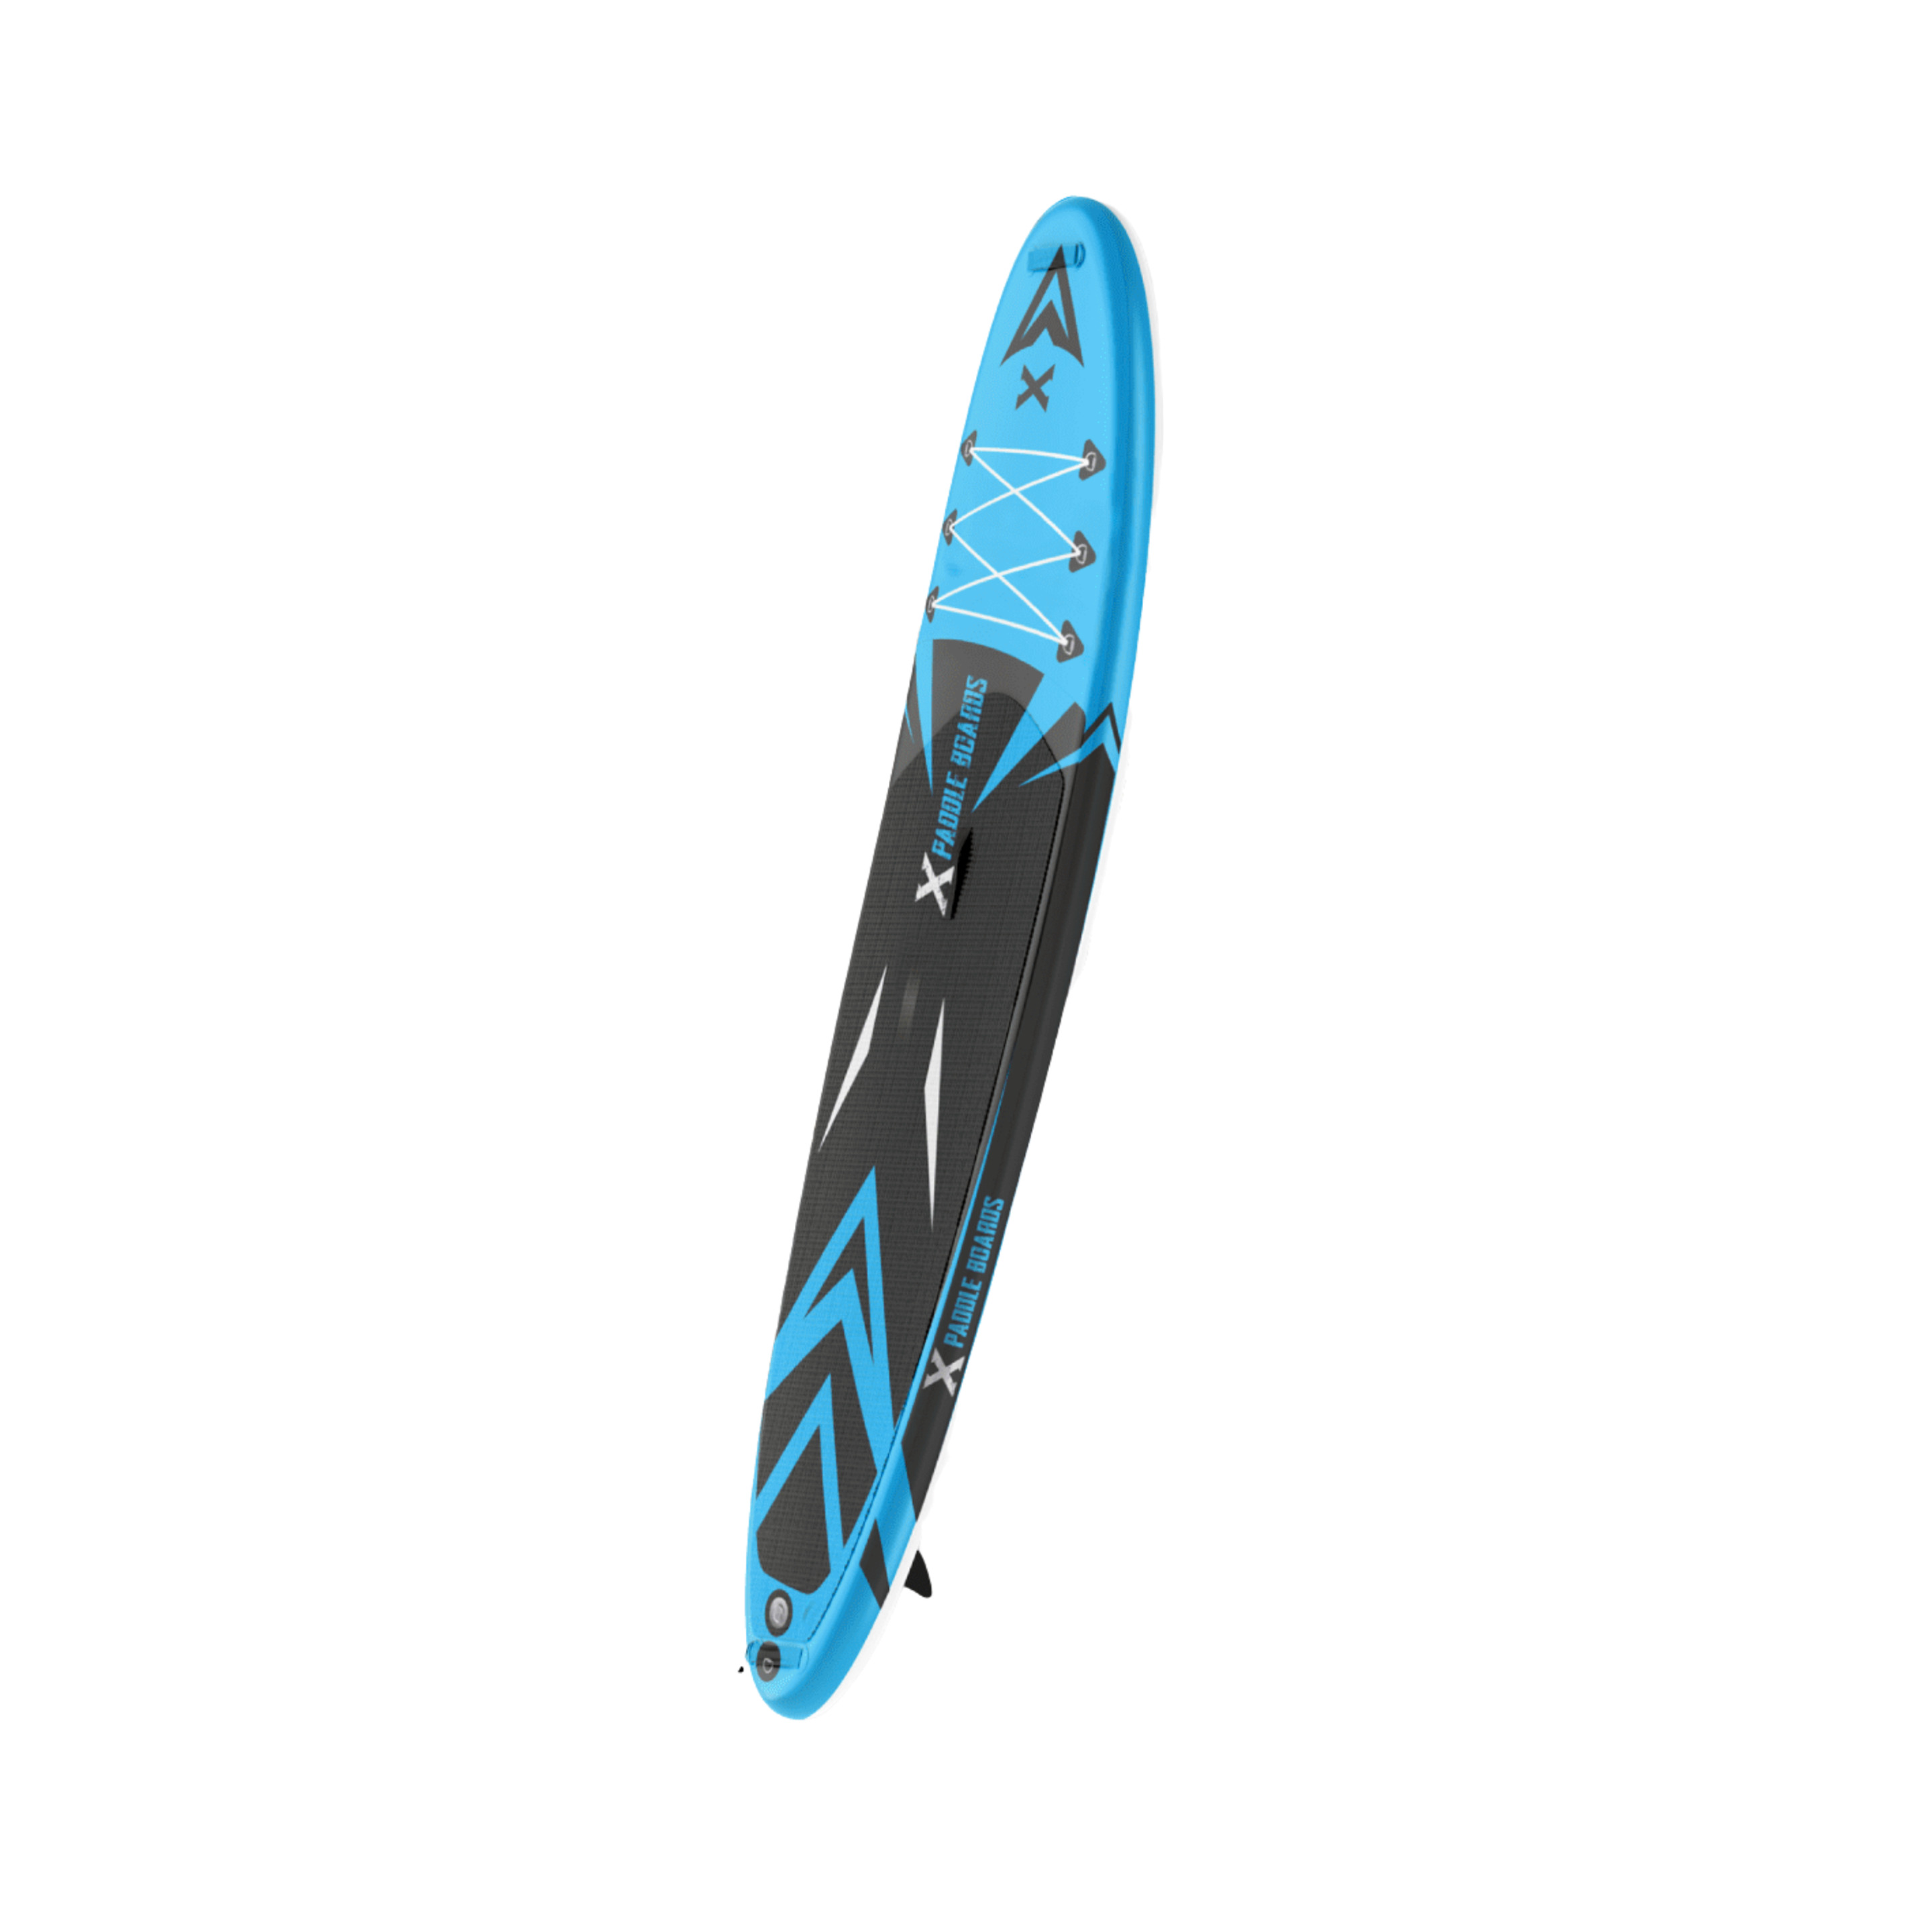 Tabla De Paddle Surf Hinchable  X-treme  320 X 82 X 15 Cm - Azul Aqua  MKP